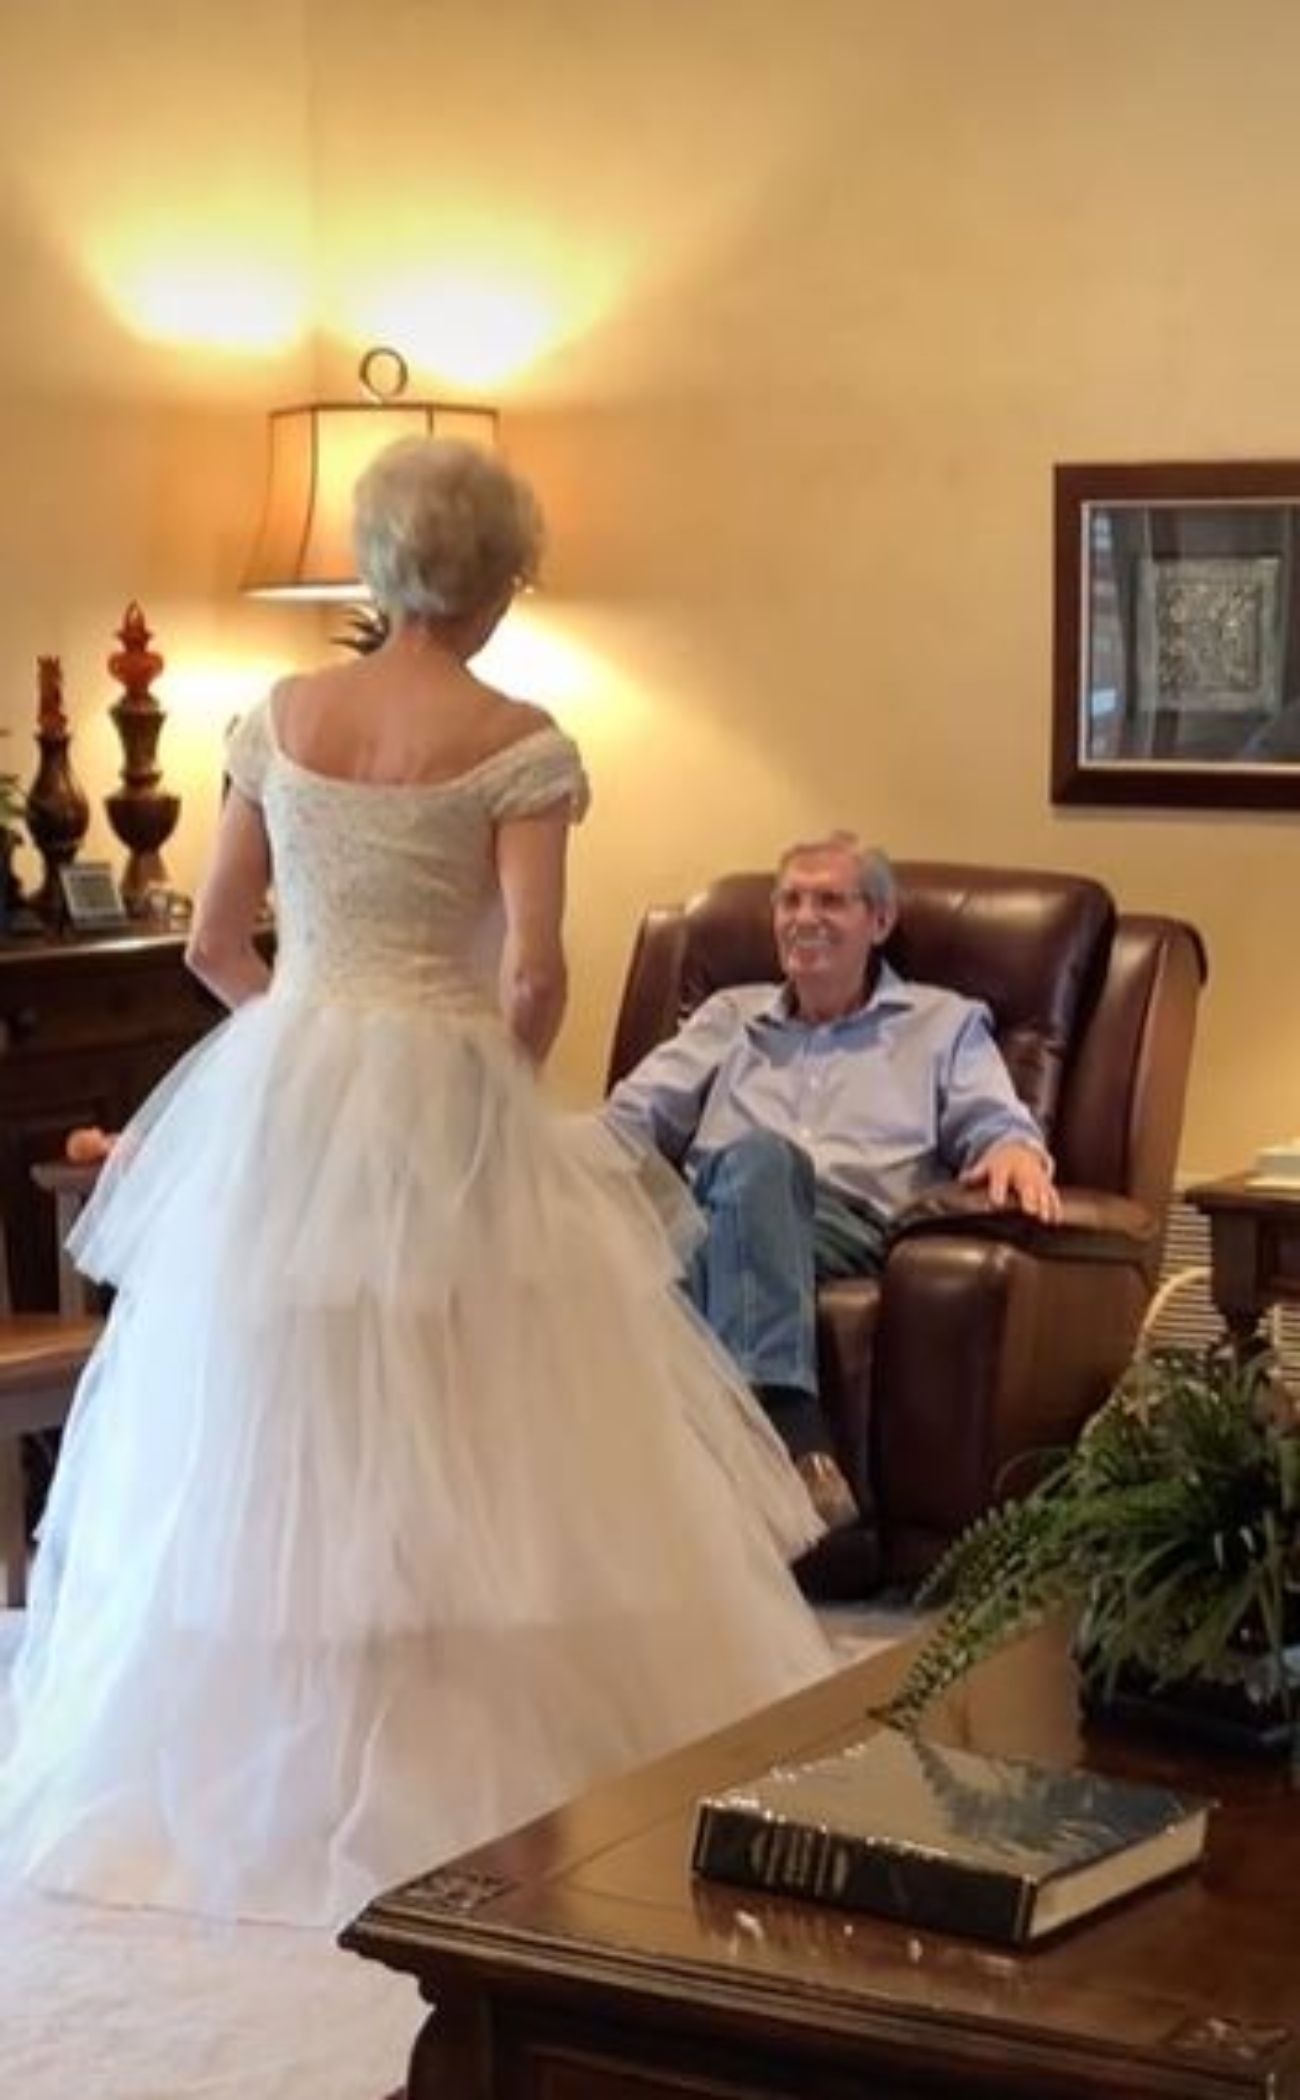 abuela prueba vestido novia 60 años despues emociona familia